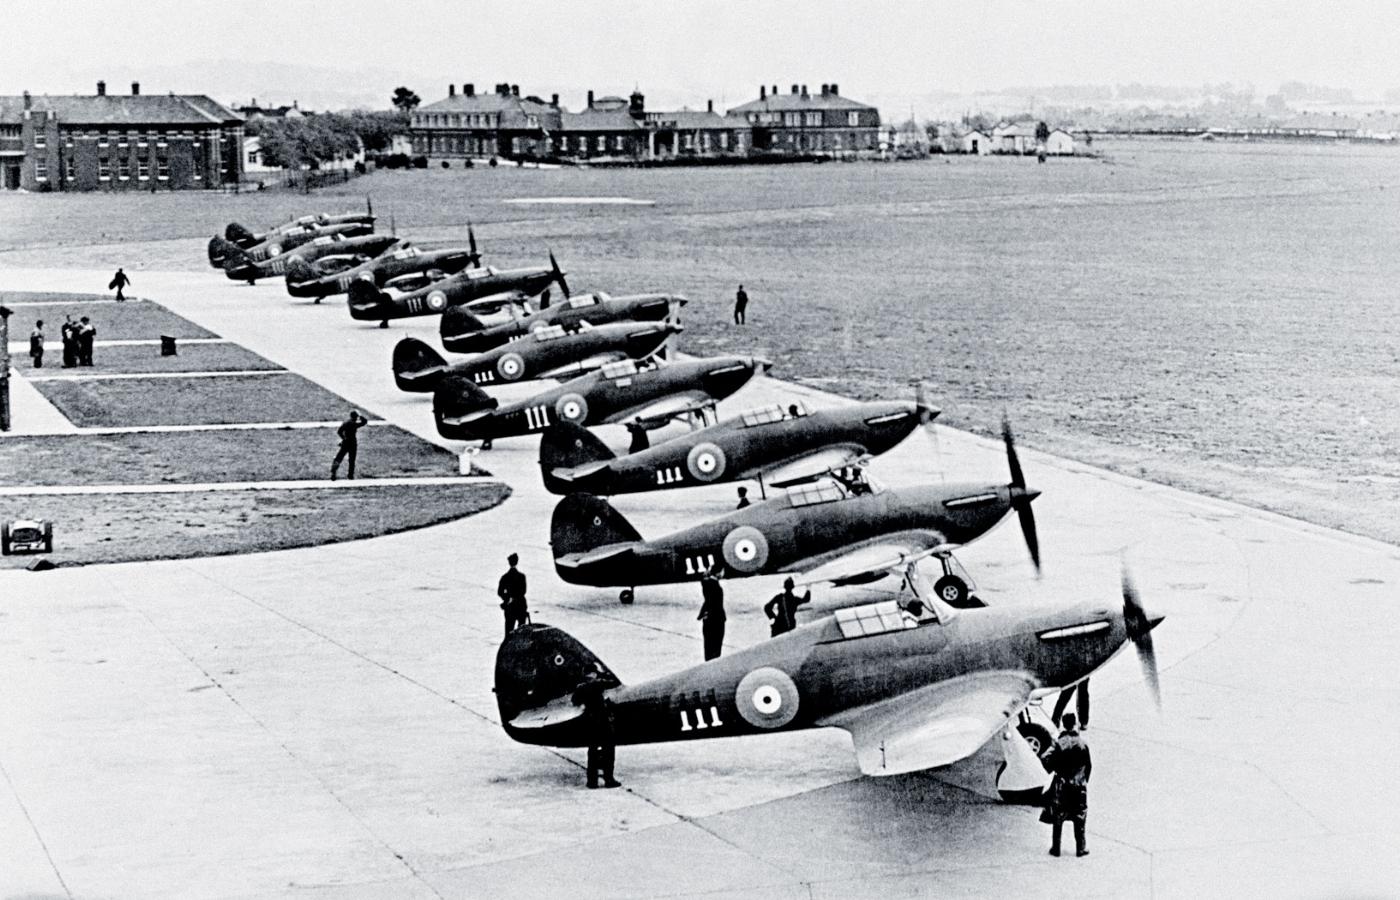 Pierwsze hurricane’y dostarczone do jednostki bojowej na lotnisko Northolt w 1938 r., później latały w Bitwie o Anglię.